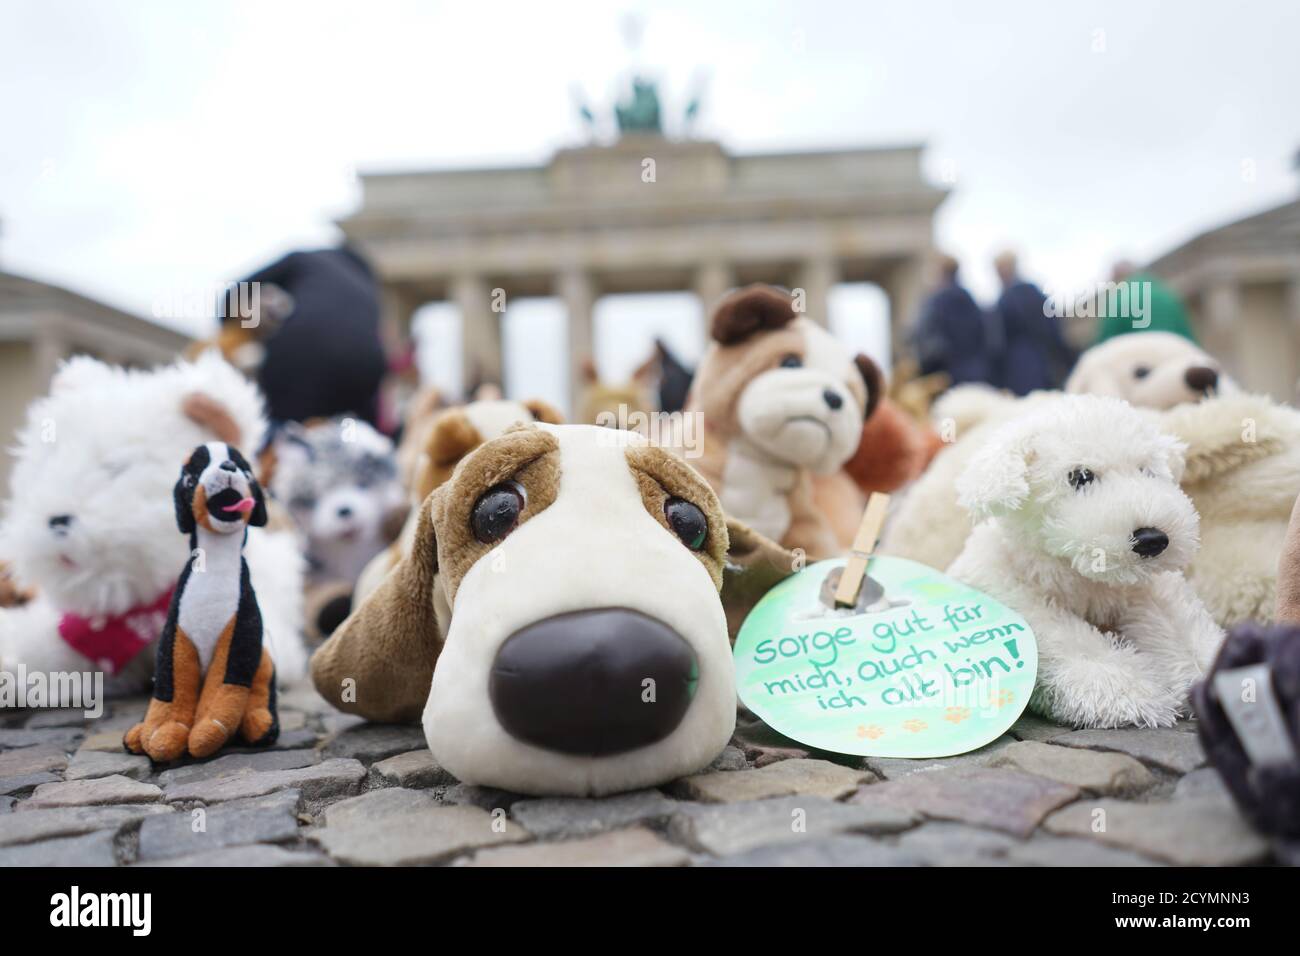 Berlin, Deutschland. Oktober 2020. Nicht weit vom Brandenburger Tor liegen  Kuscheltiere auf dem Boden, während ein kleines Schild auf einem Kuscheltier  die Aufschrift trägt: "Kümmere dich gut um mich, auch wenn ich